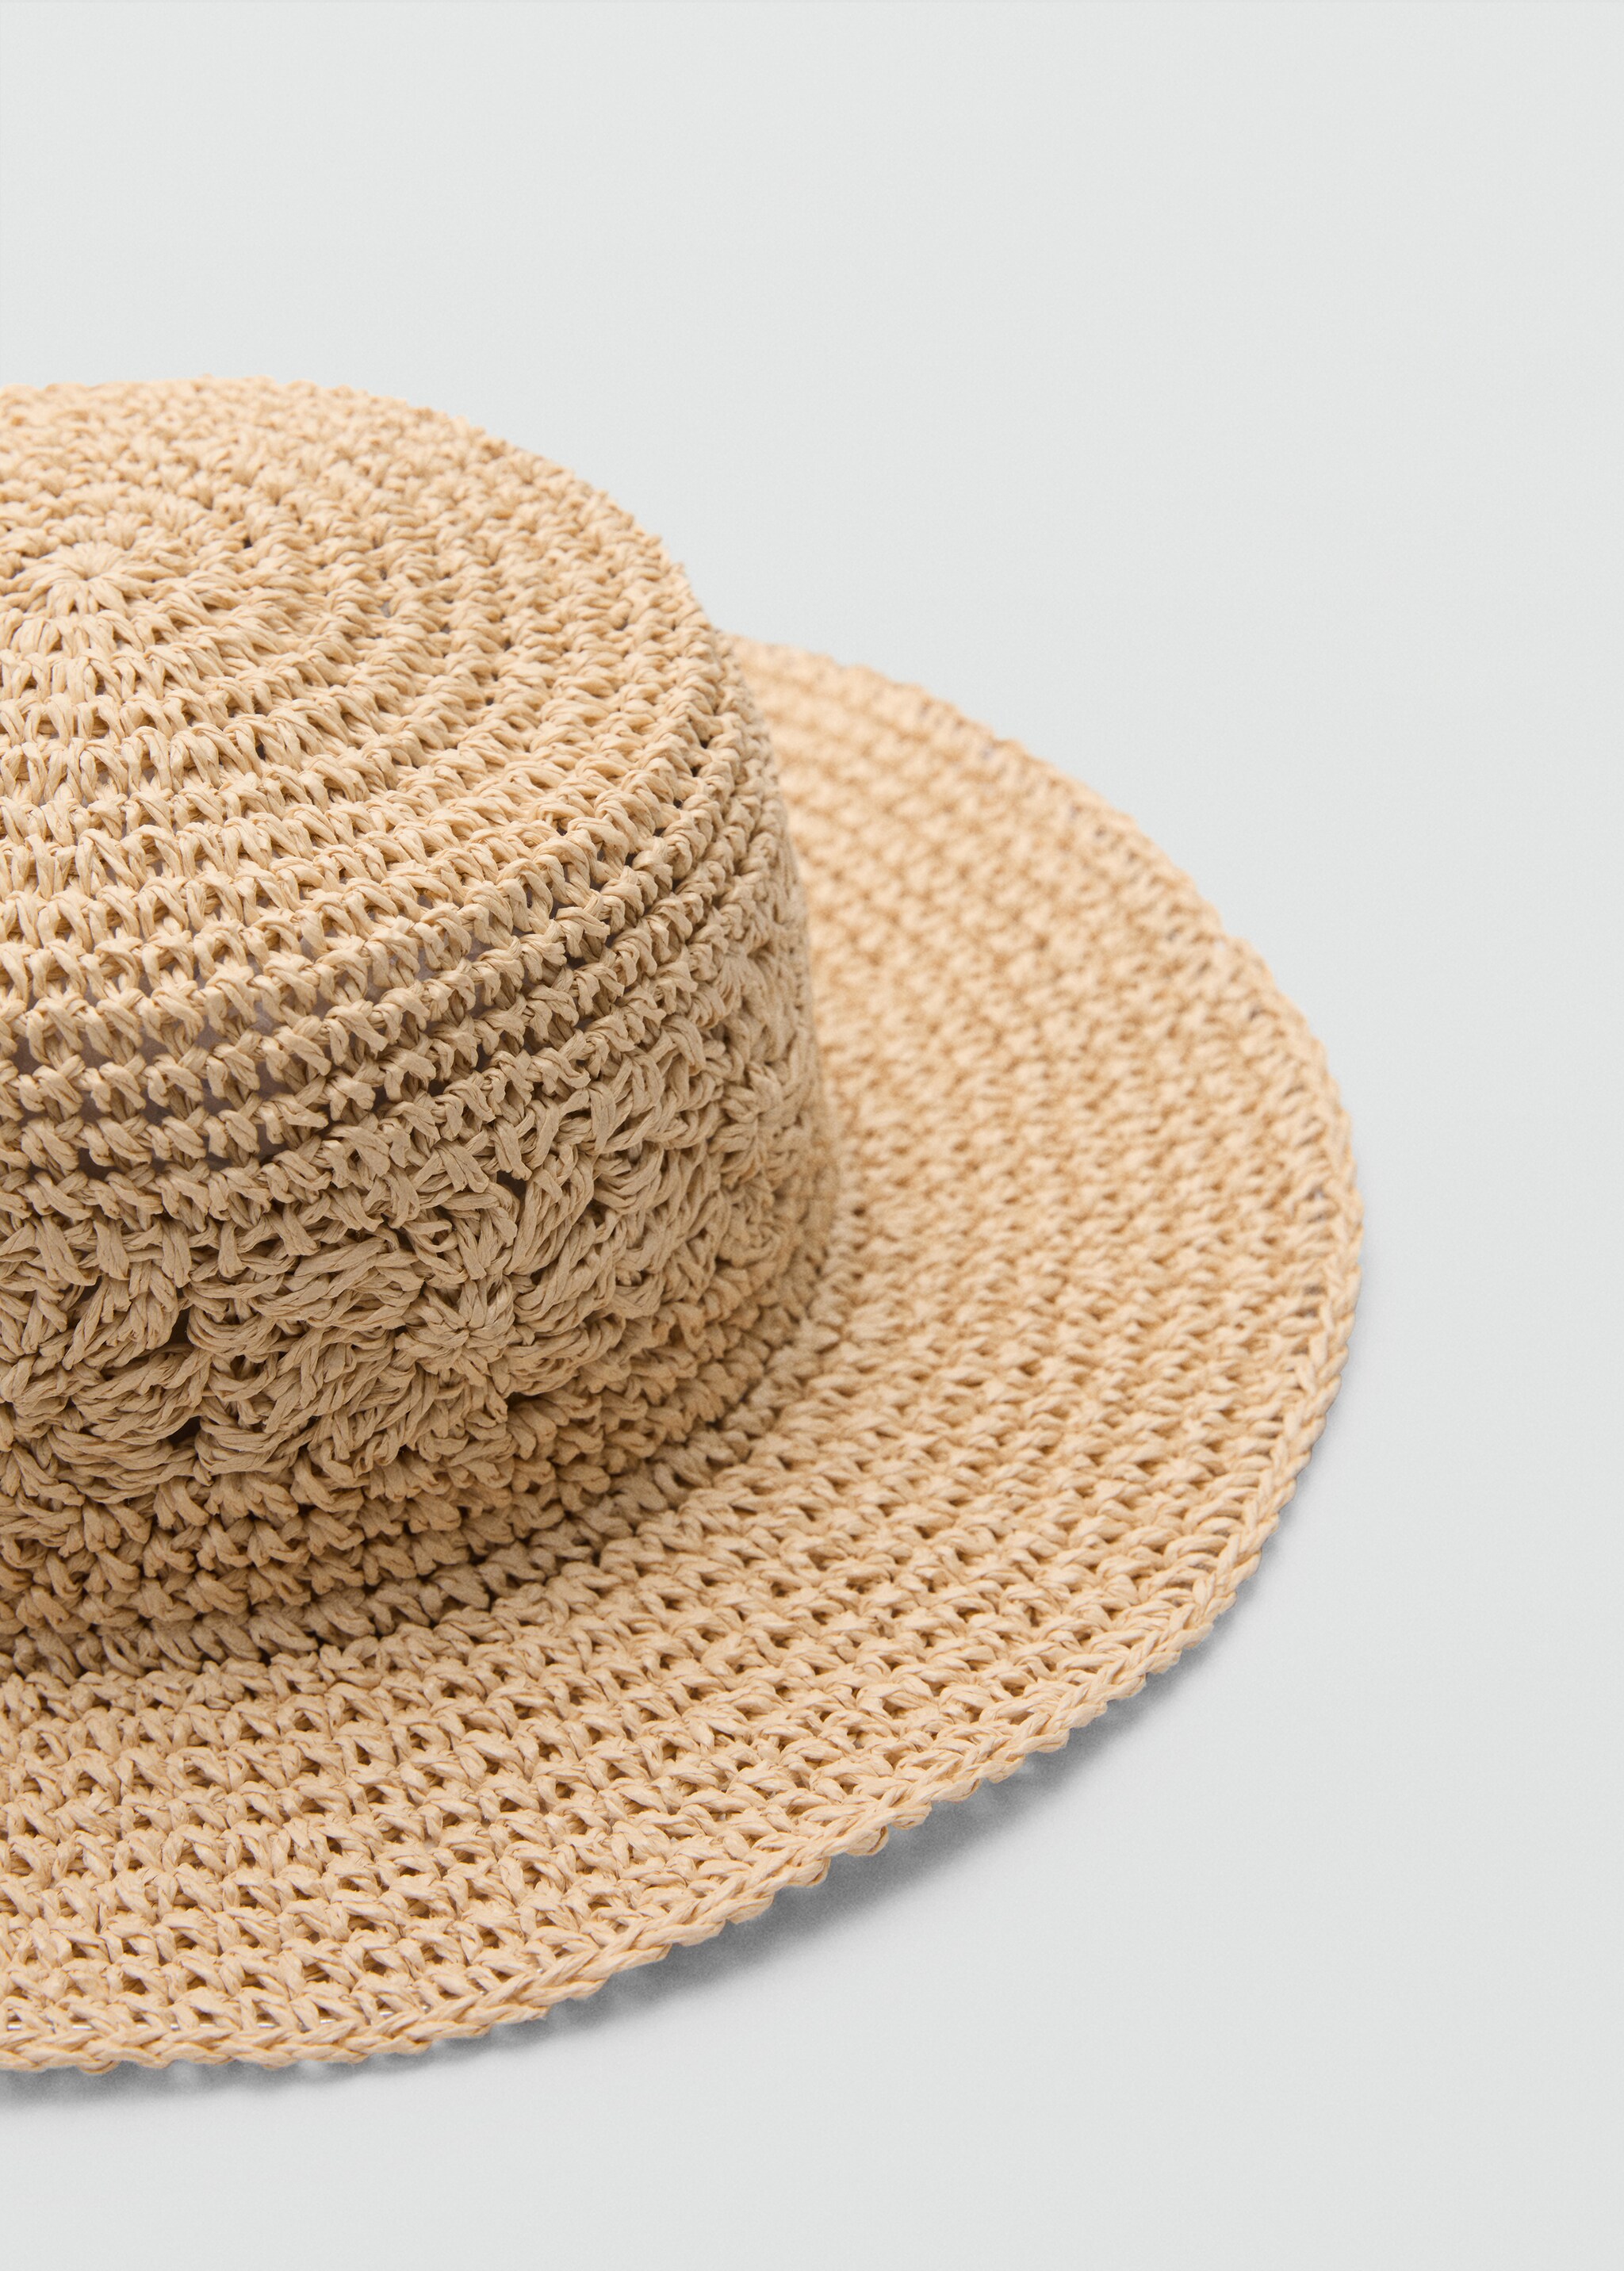 Шляпа из натурального волокна - Средний план